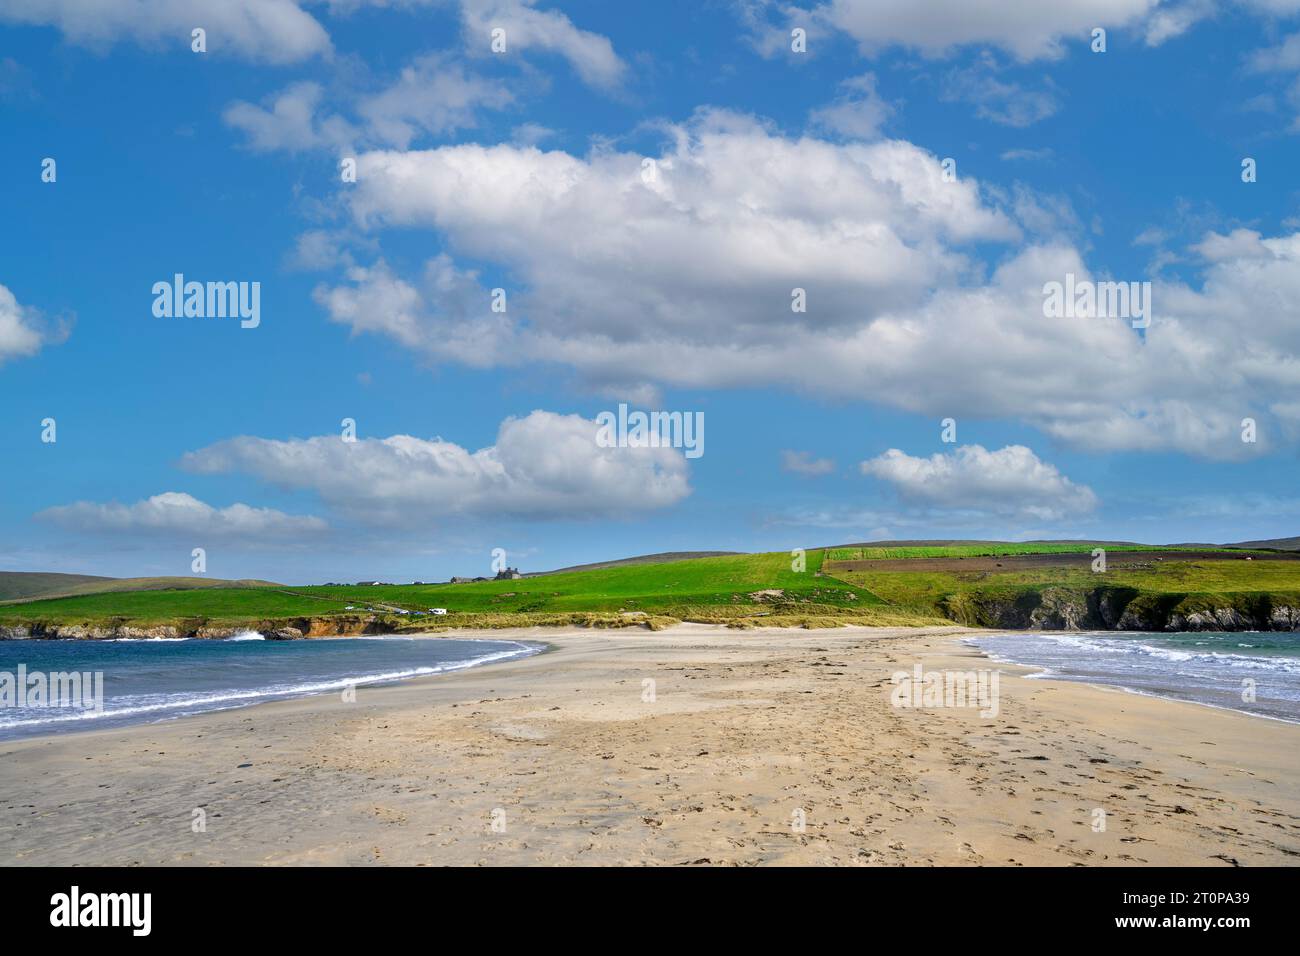 Le tombolo reliant l'île de St Ninians au continent, en regardant vers le continent, Shetland, Écosse, Royaume-Uni Banque D'Images